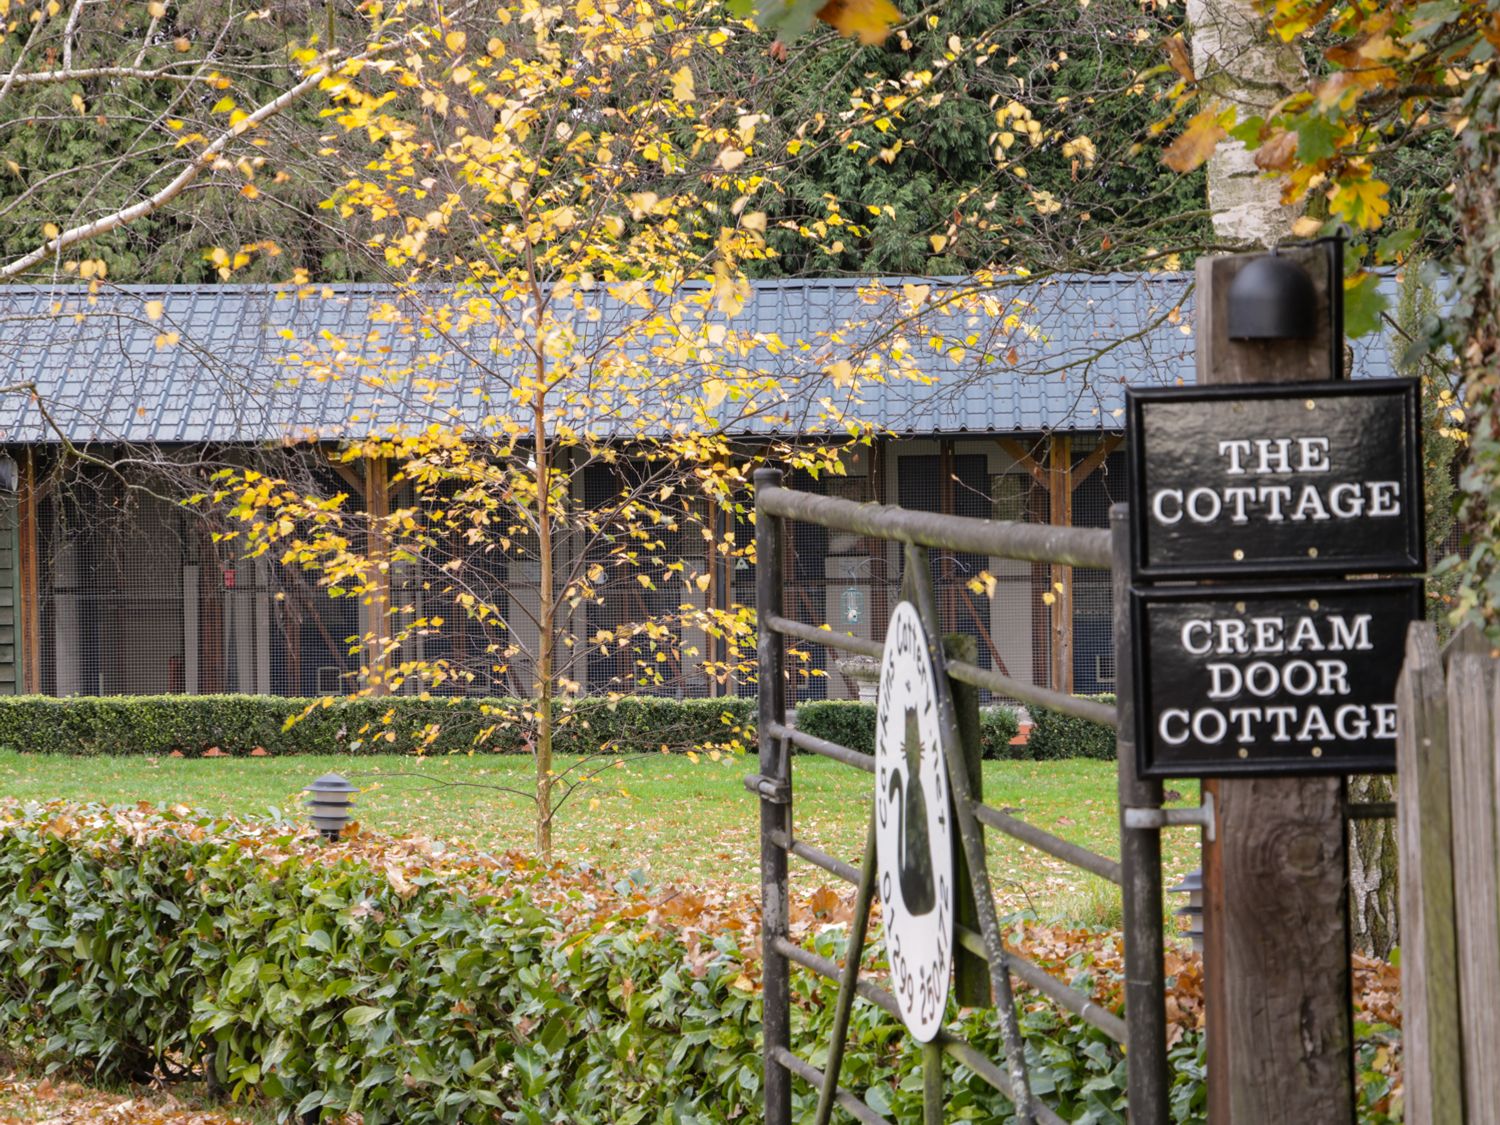 Cream Door Cottage, Worcestershire